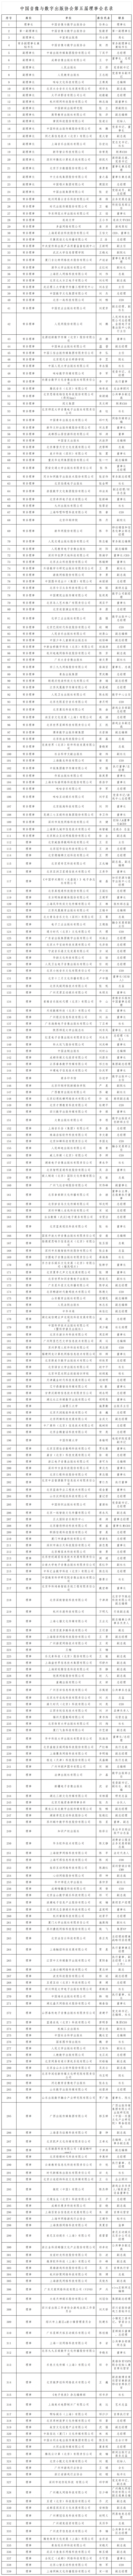 中国音像与数字出版协会第五届理事会名录_Sheet1(4).png